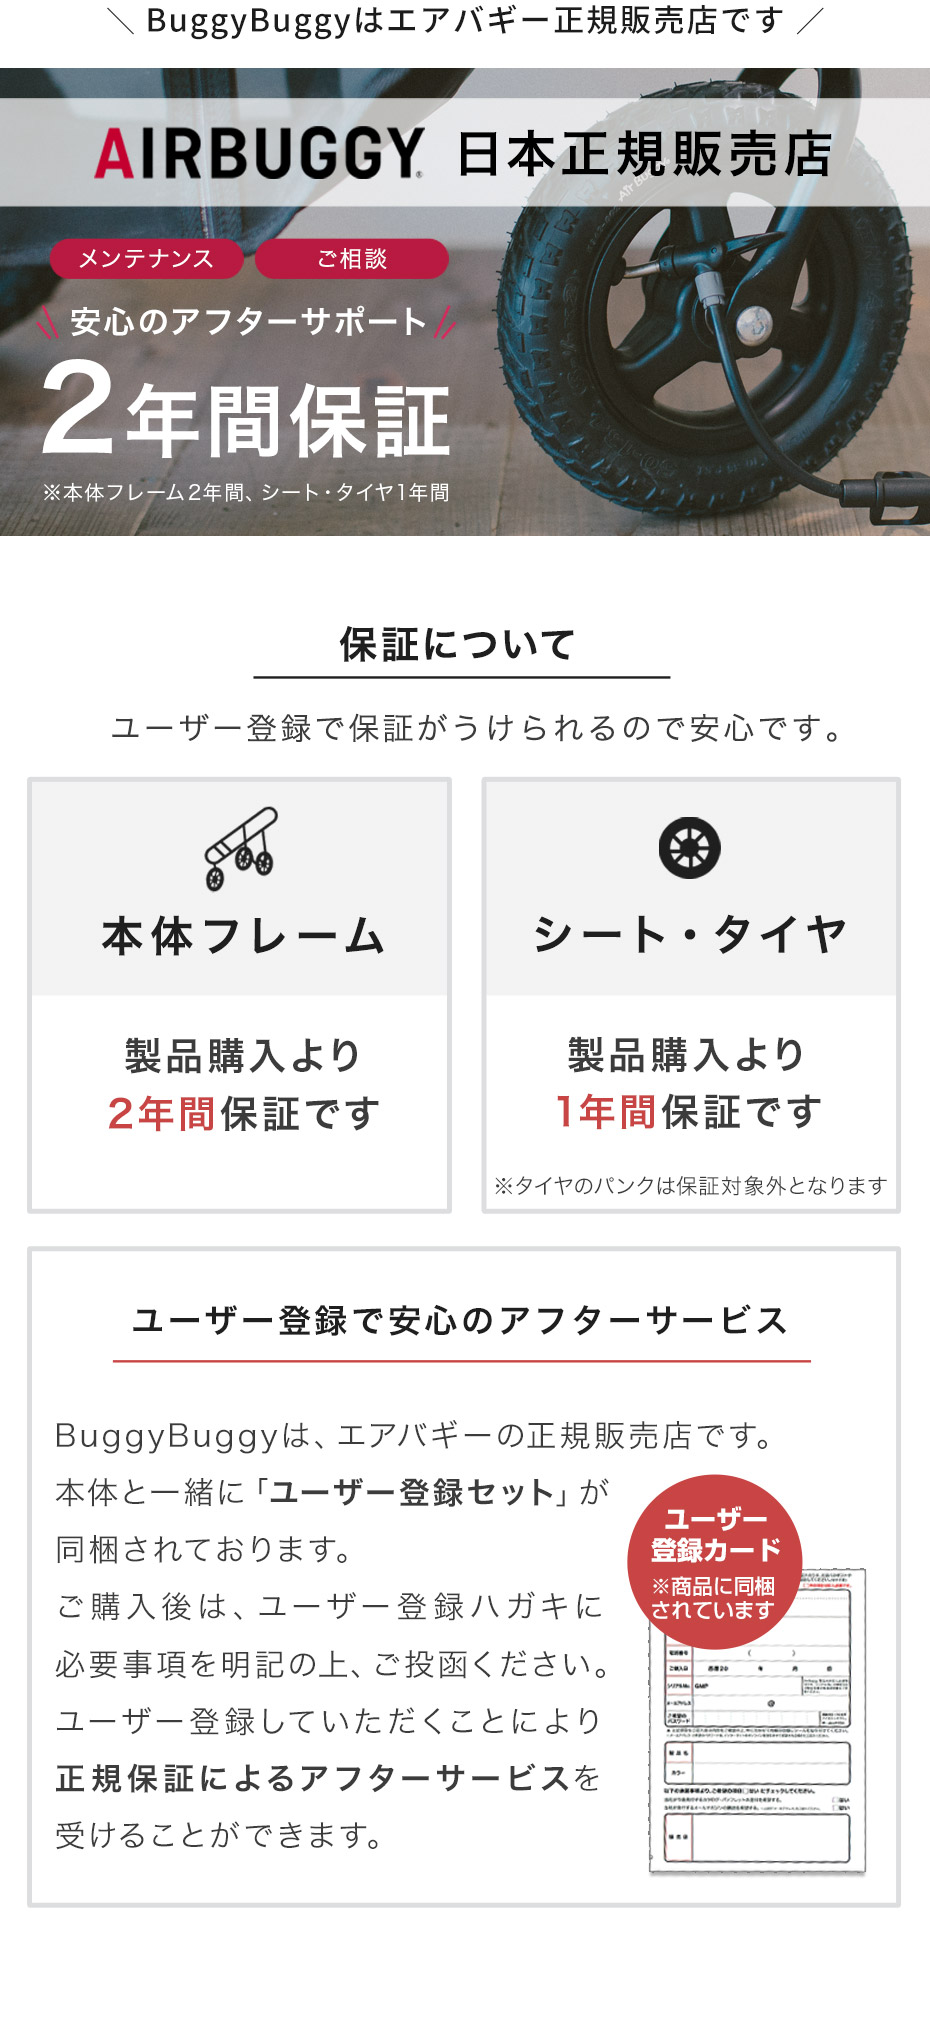 BuggyBuggyはエアバギー正規販売店です。ユーザー登録で安心のアフターサービス。保証がうけられるので安心です。